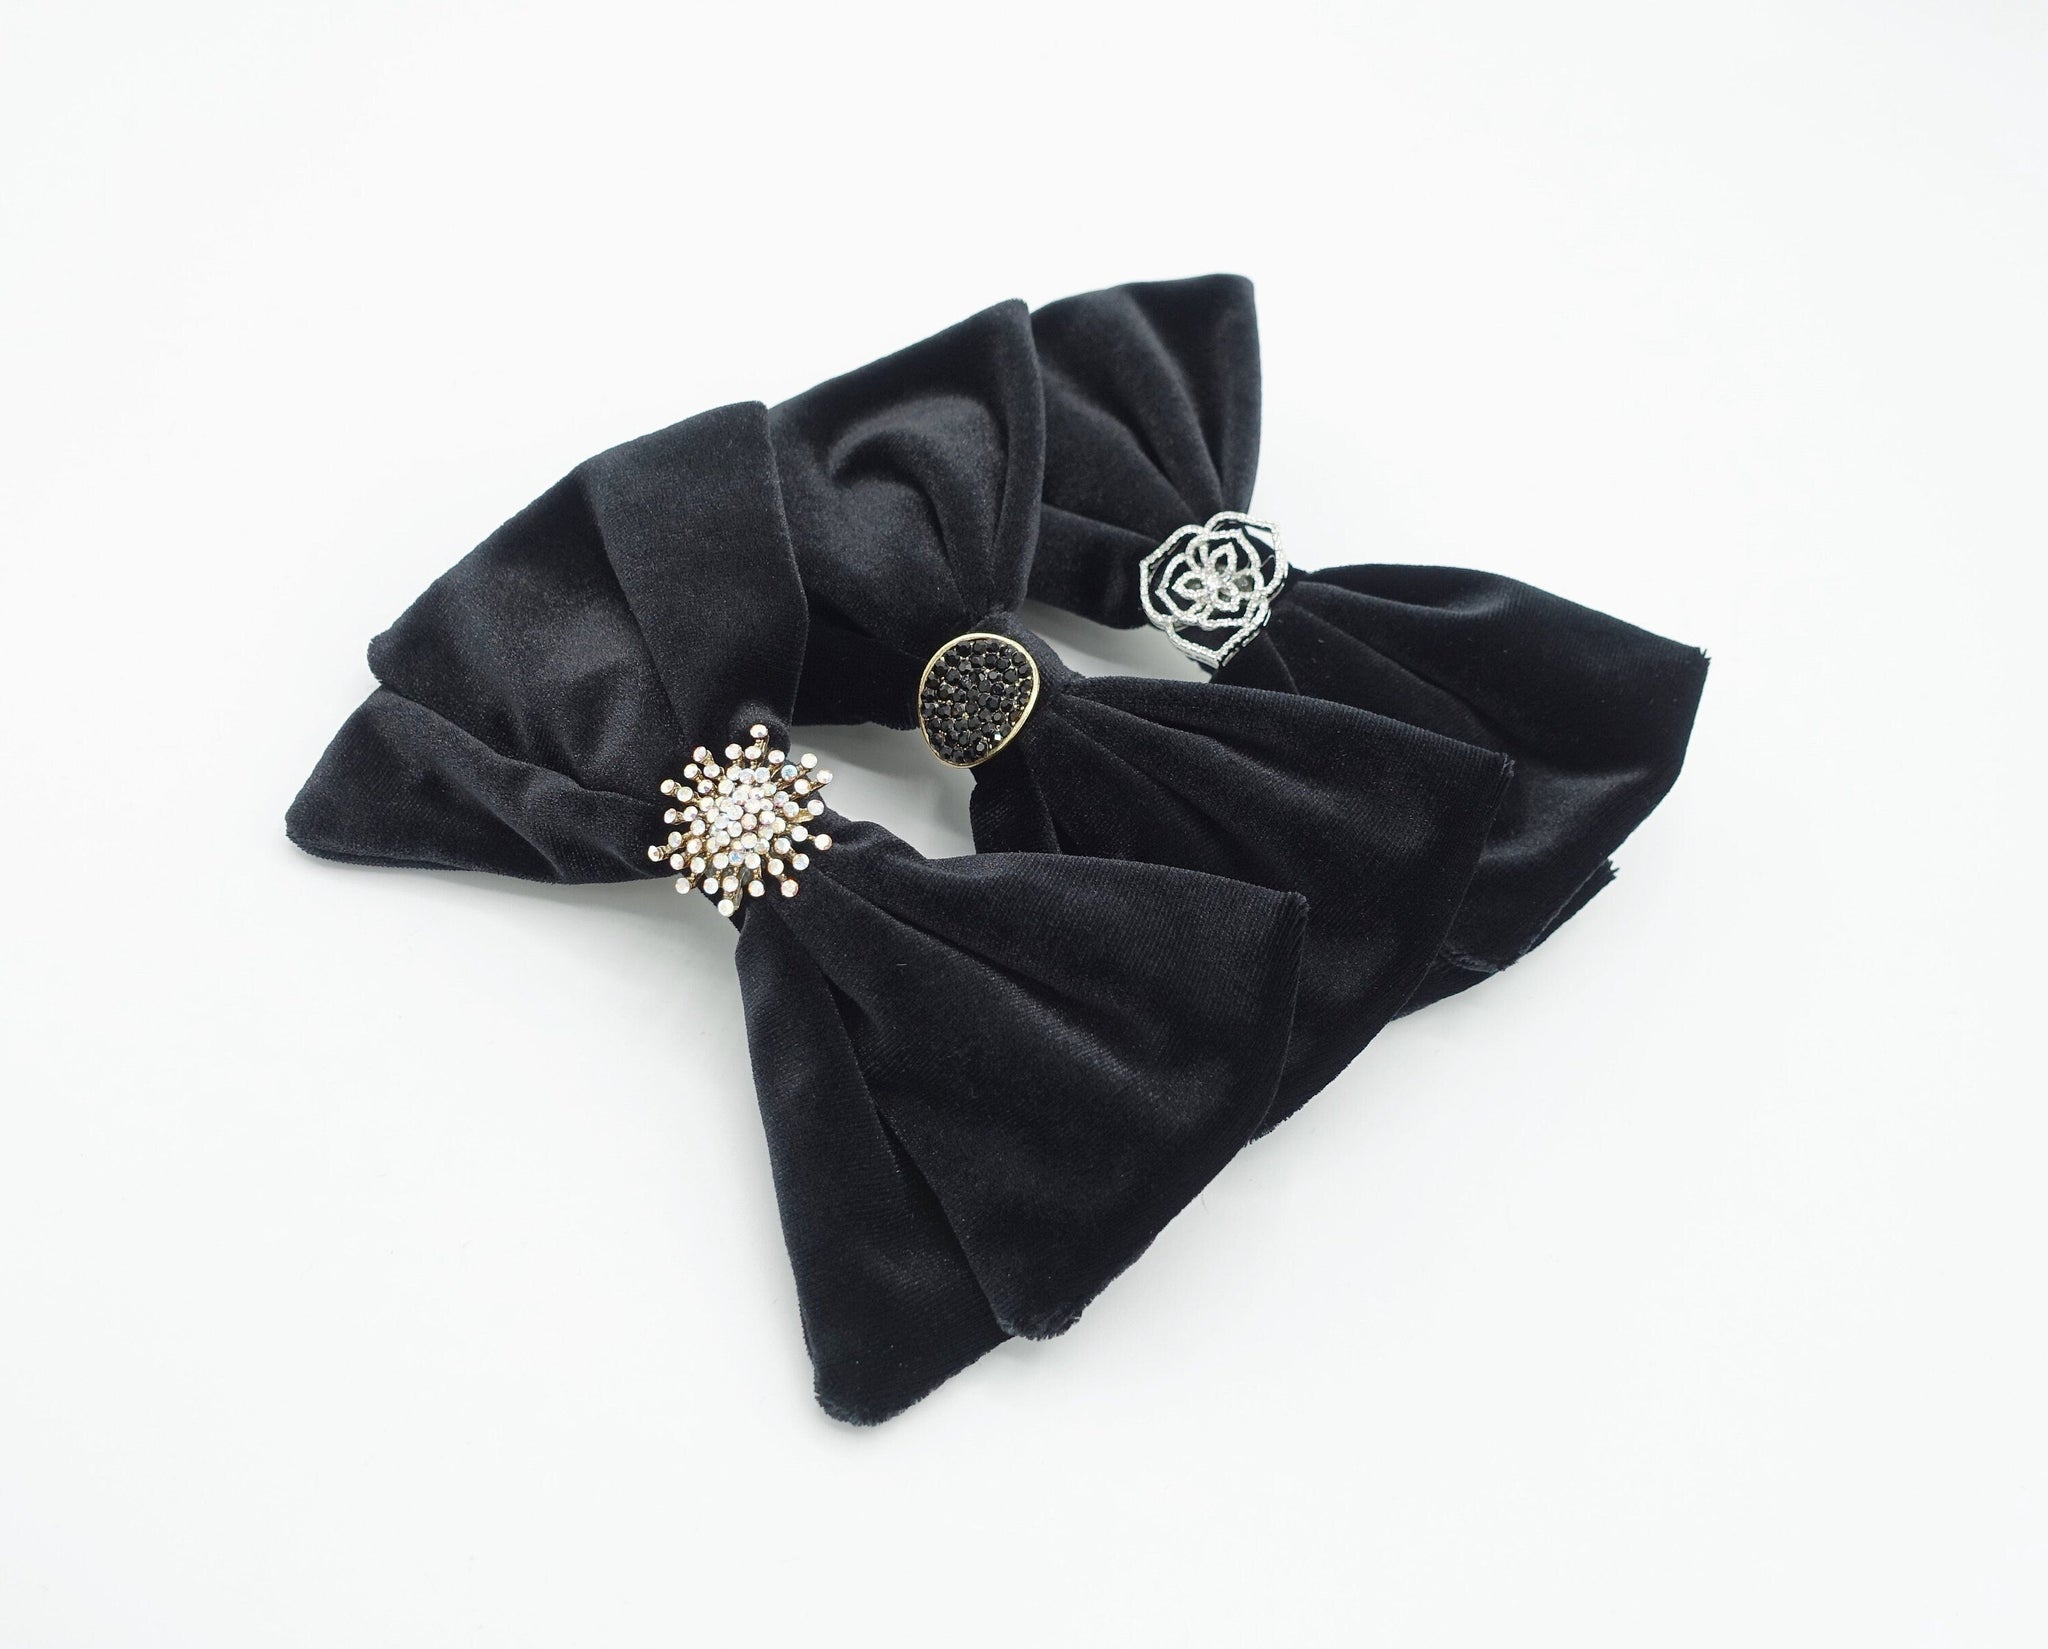 veryshine.com Barrette (Bow) black velvet hair bow rhinestone casting embellished bling hair accessory for women